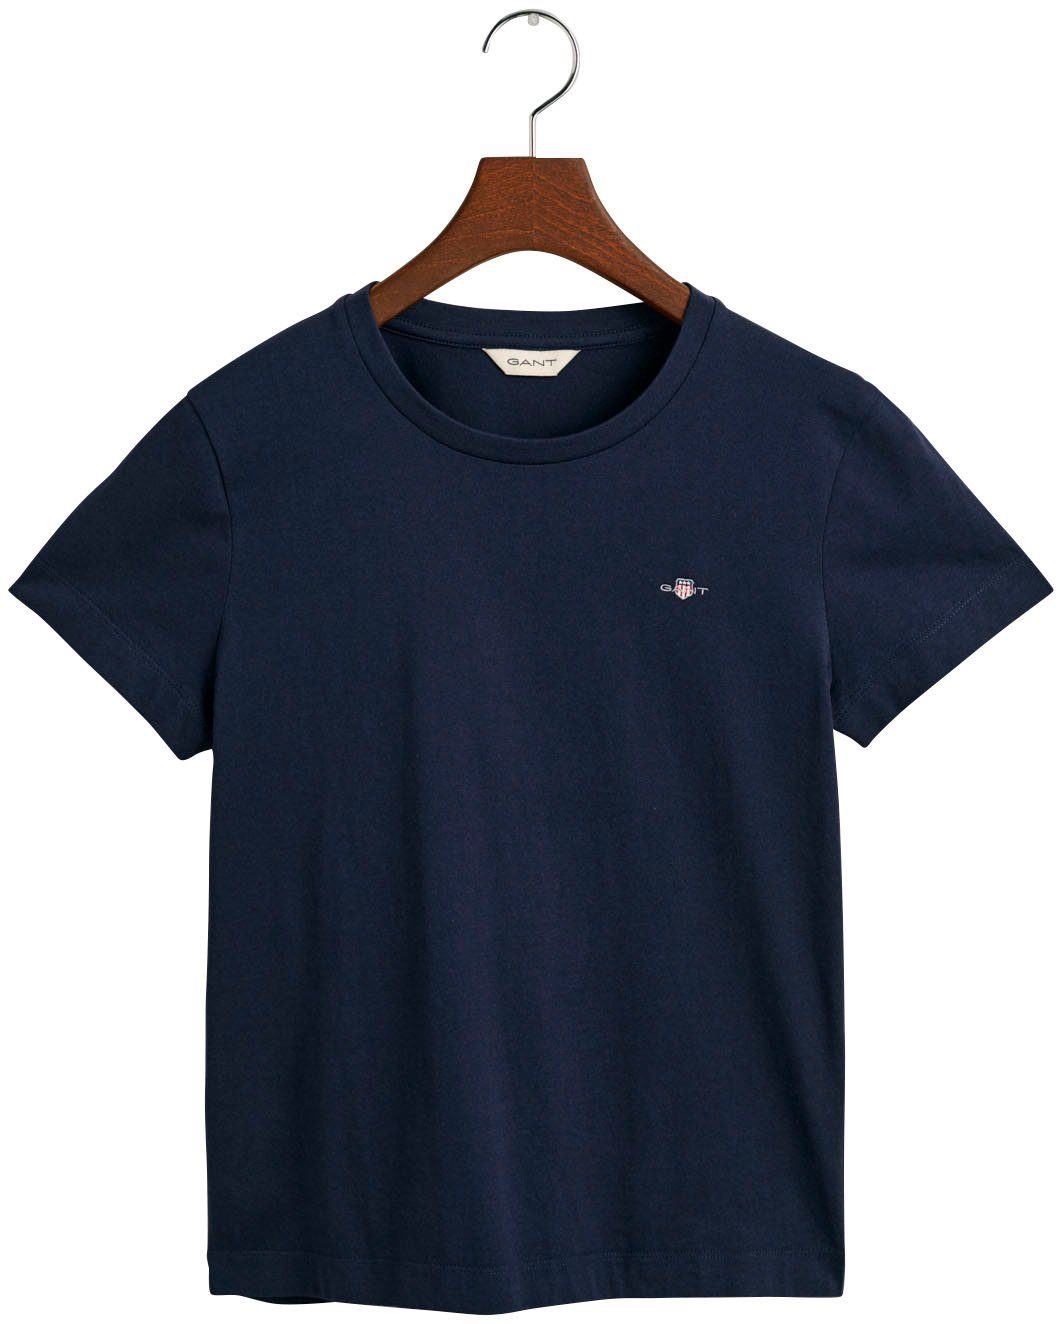 aufgestickten Gant blue auf REG mit SHIELD KA der T-Shirt Evening kleinen Brust einer T-SHIRT Wappen-Grafik